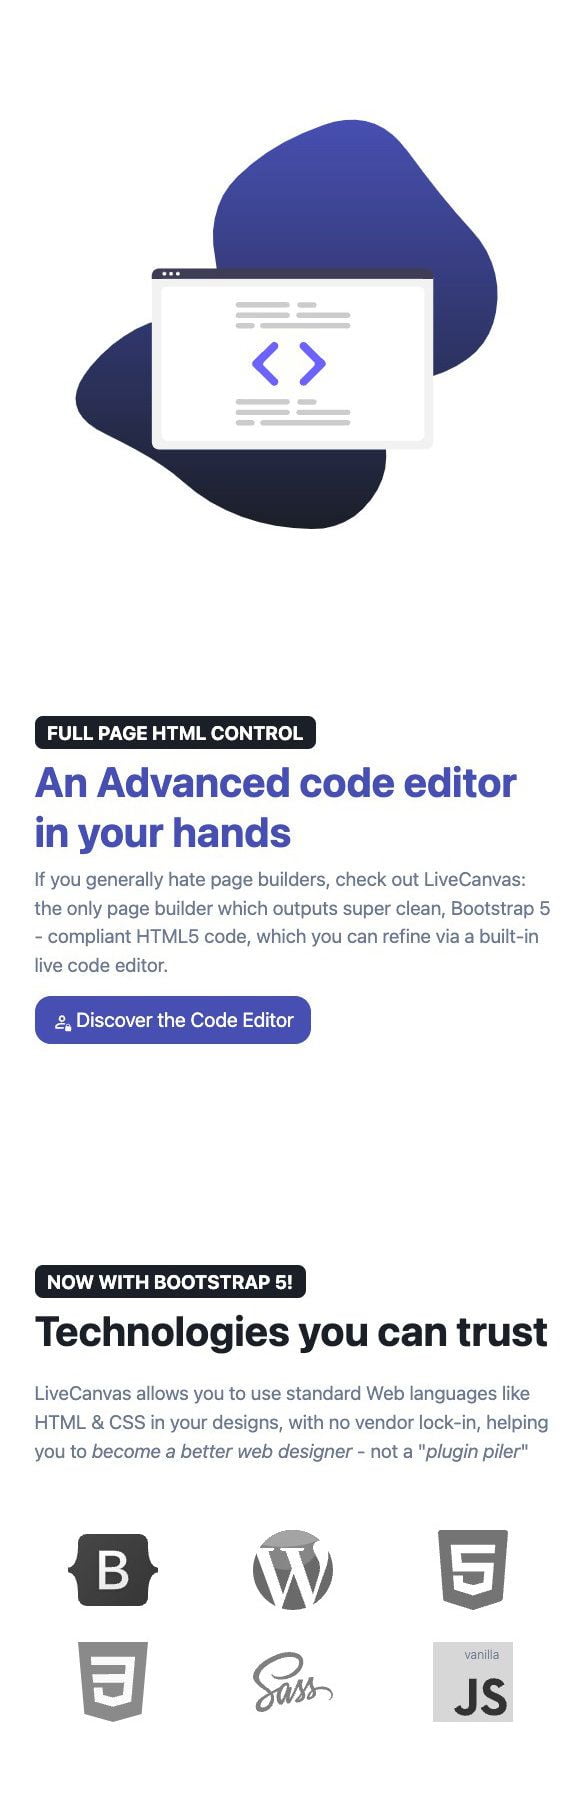 Traylblazer - Code-Share Software Lifetime Deals | live canvas 2